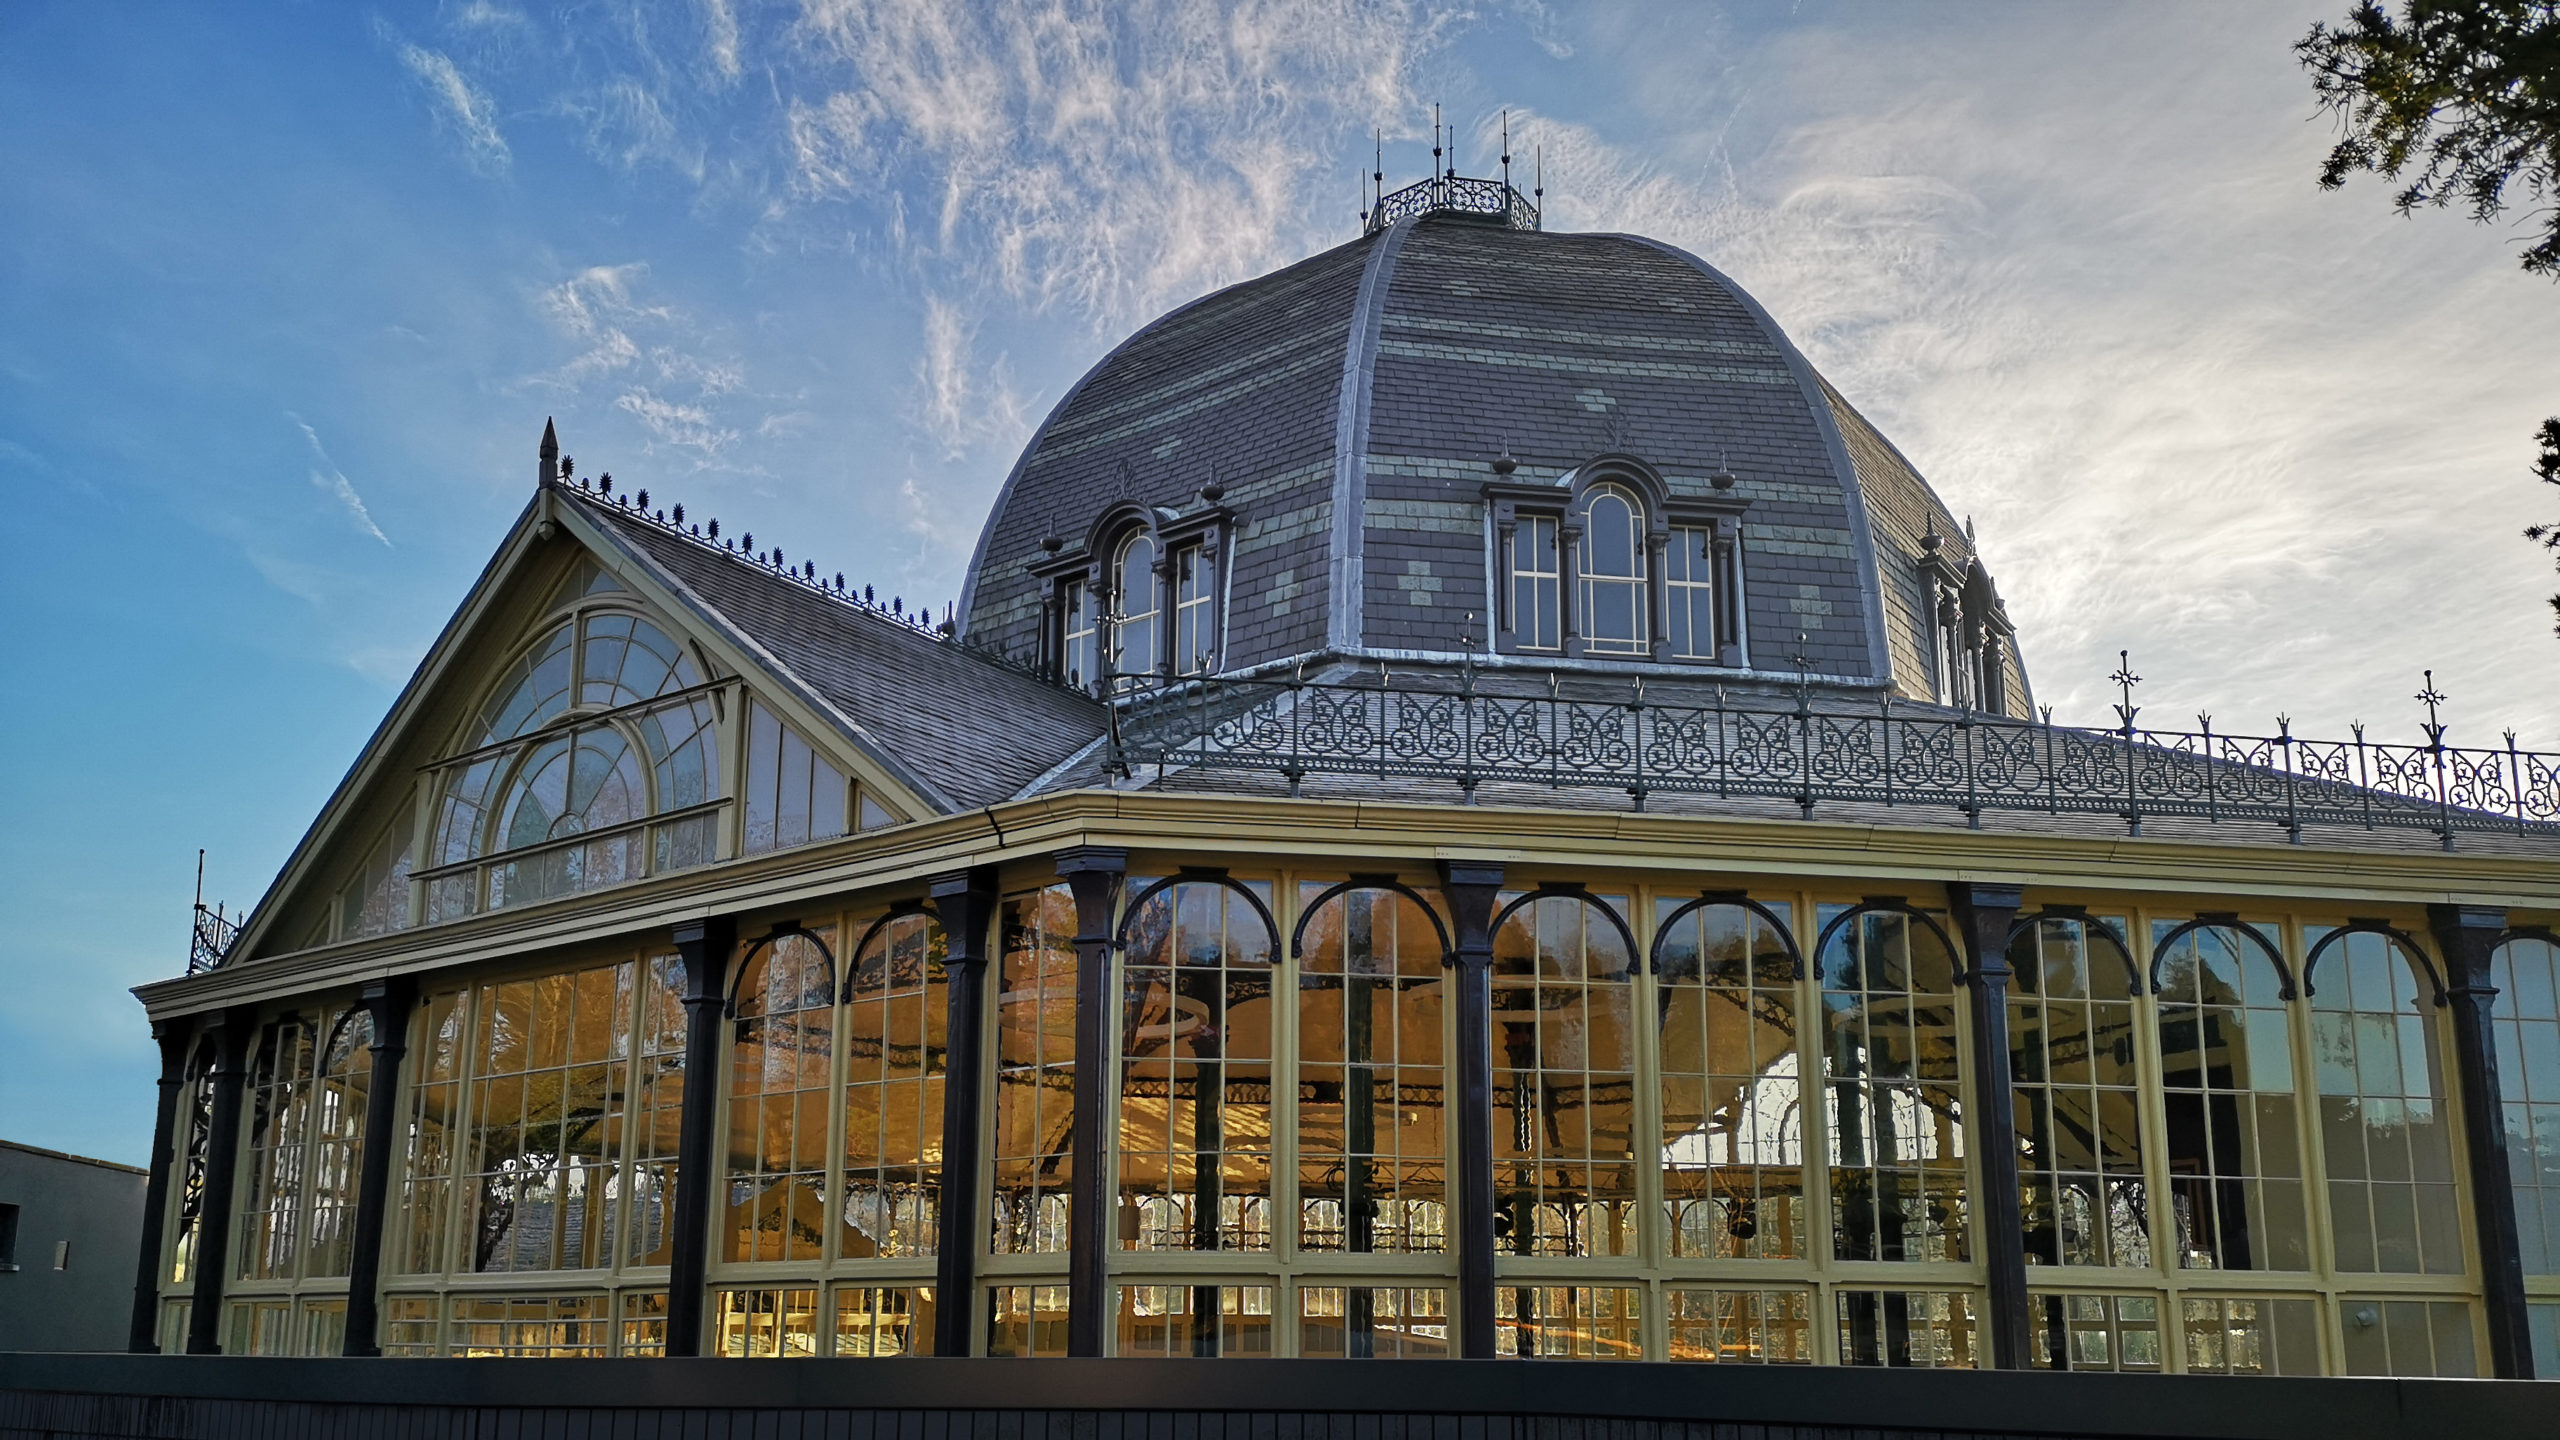 Fondation Louis Vuitton, Paris (FR) - Curved glass casts off